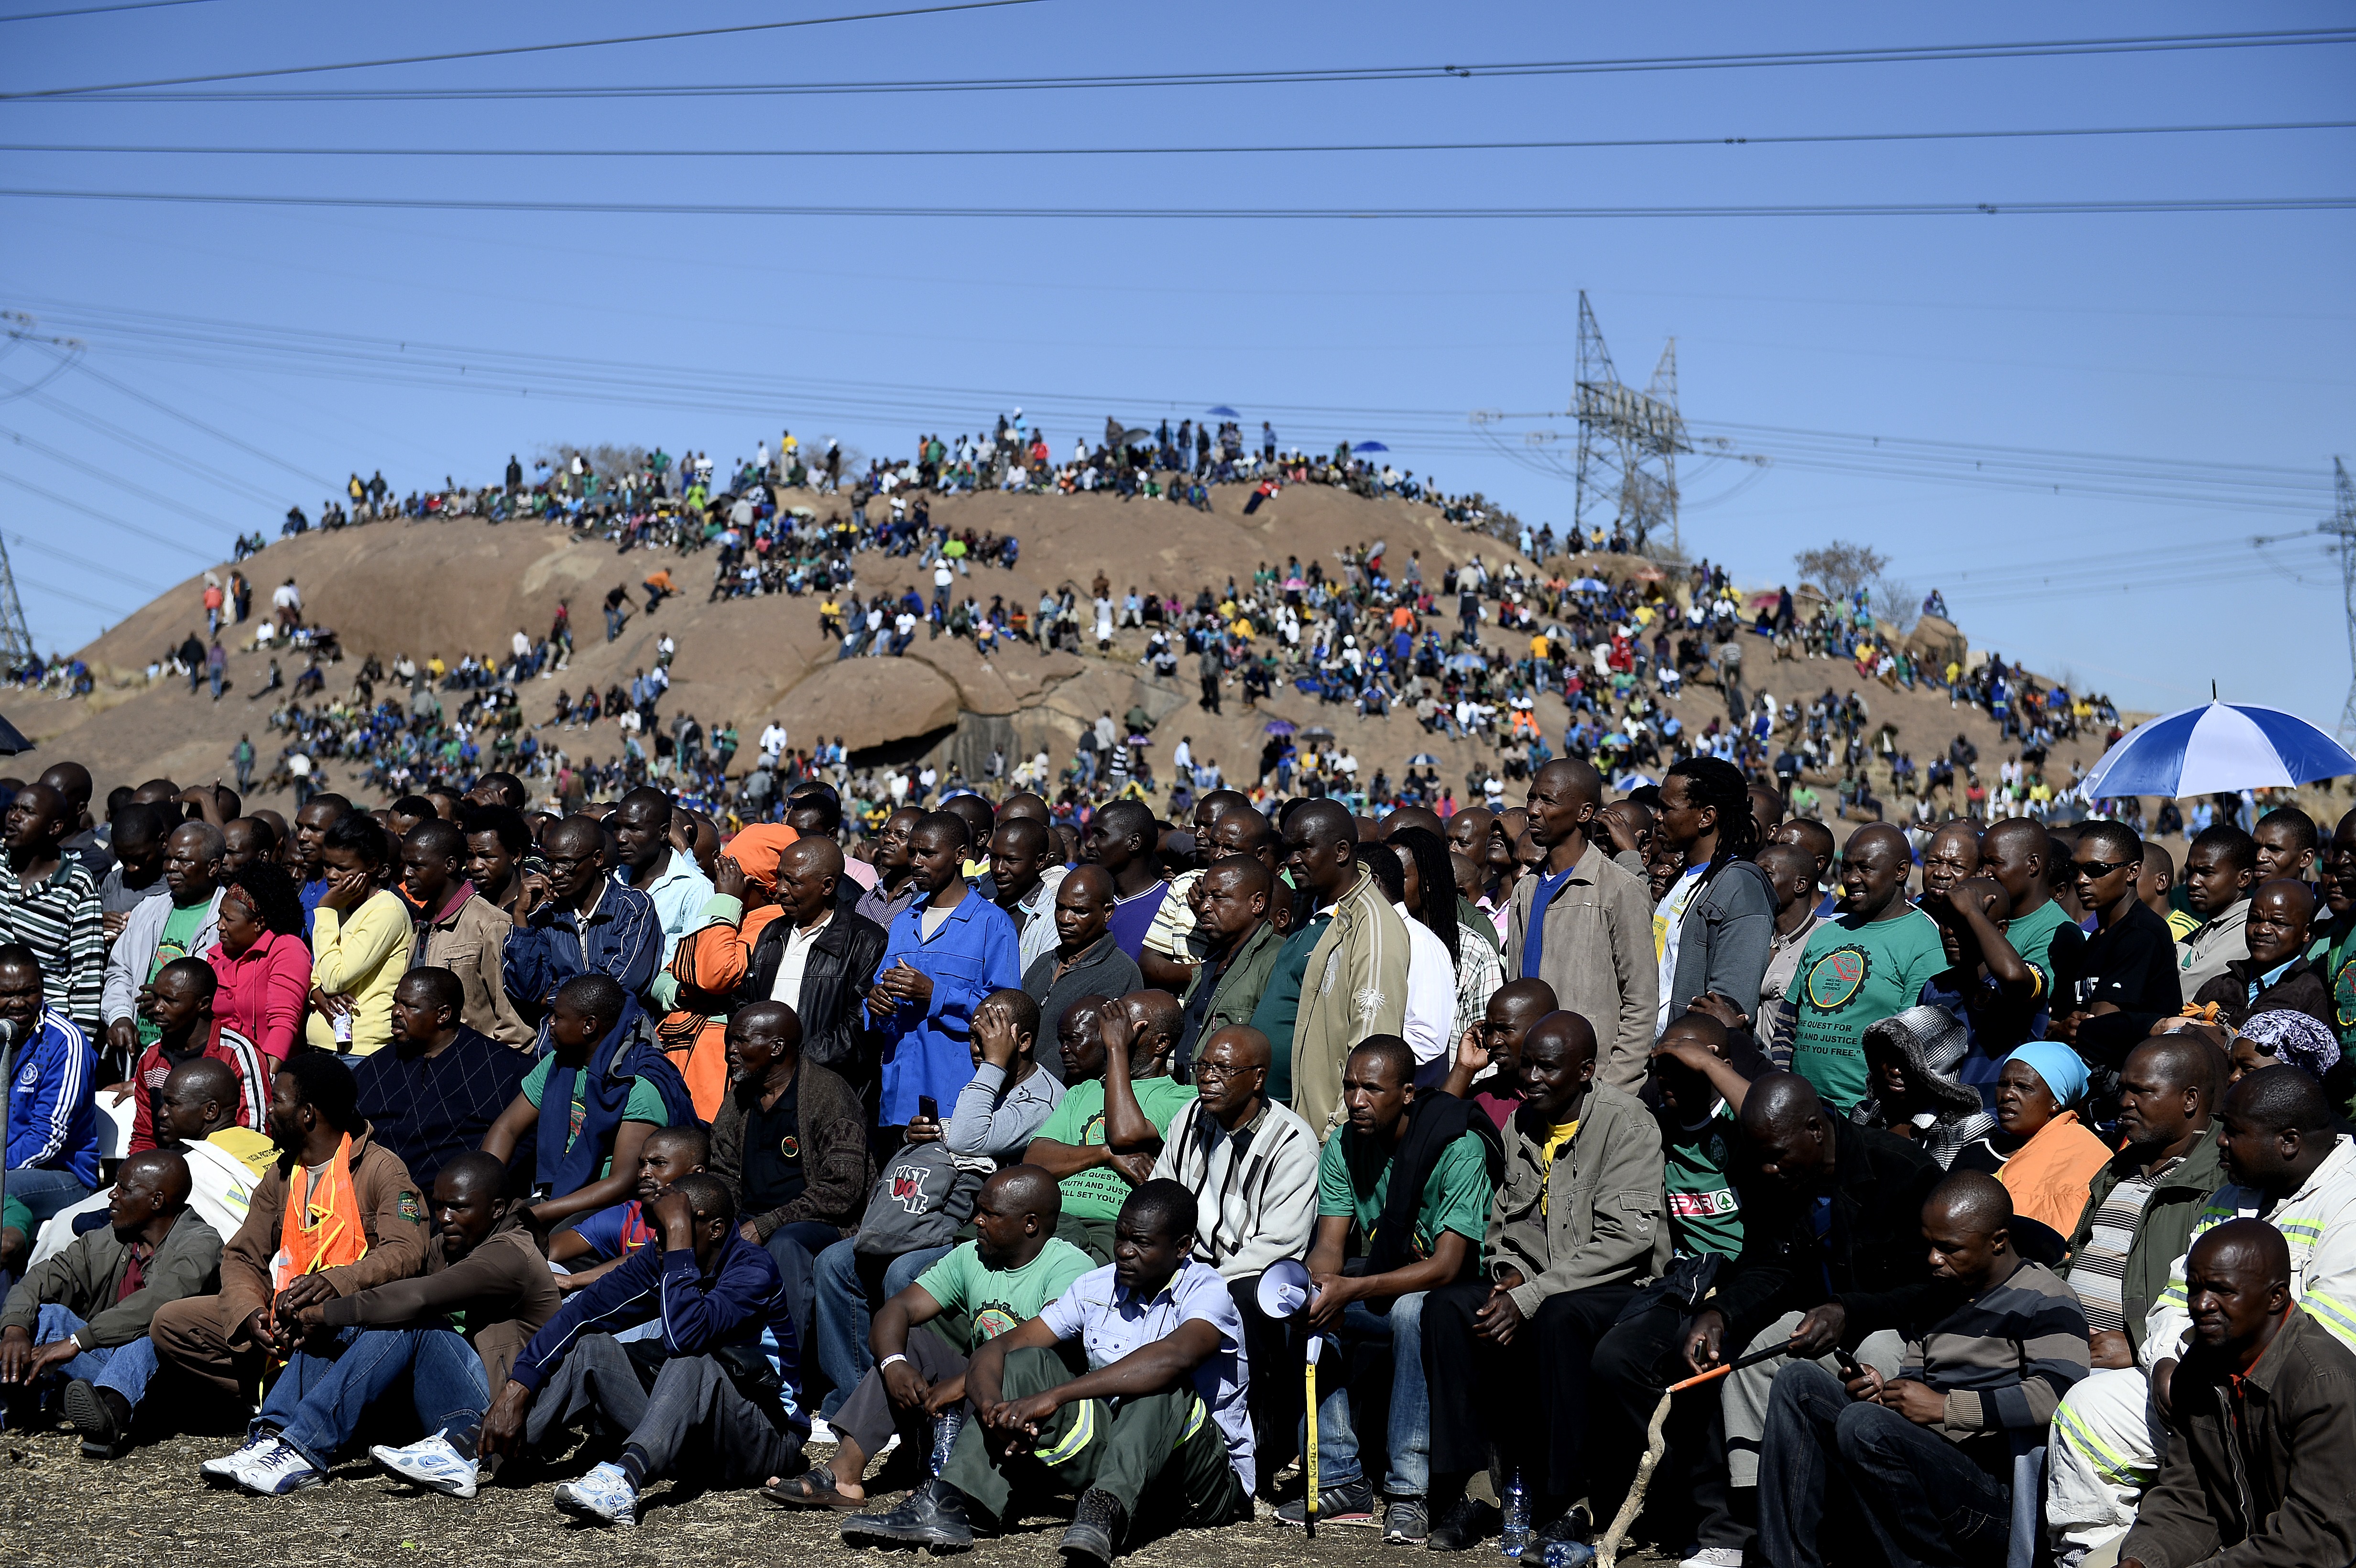 Marikana: lotta operaia e repressione nel Sudafrica post-apartheid